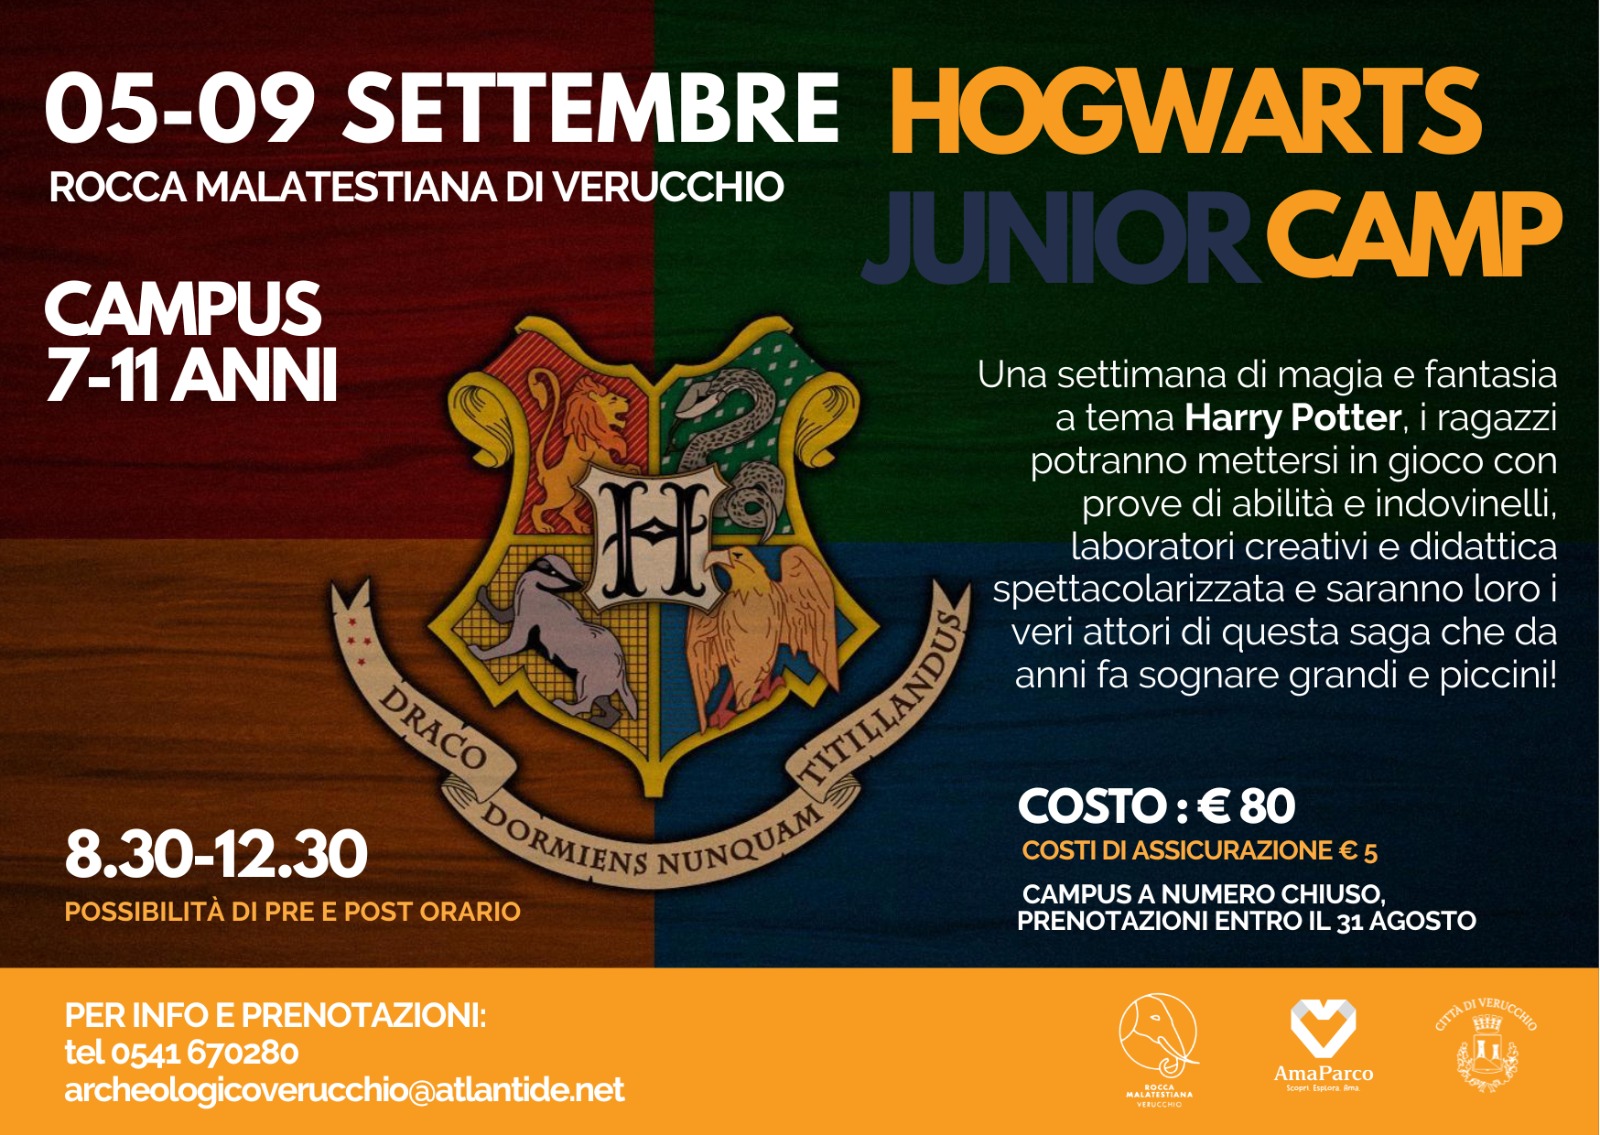 hogwarts junior camp,5-9 settembre 2022 rocca malatestiana verucchio